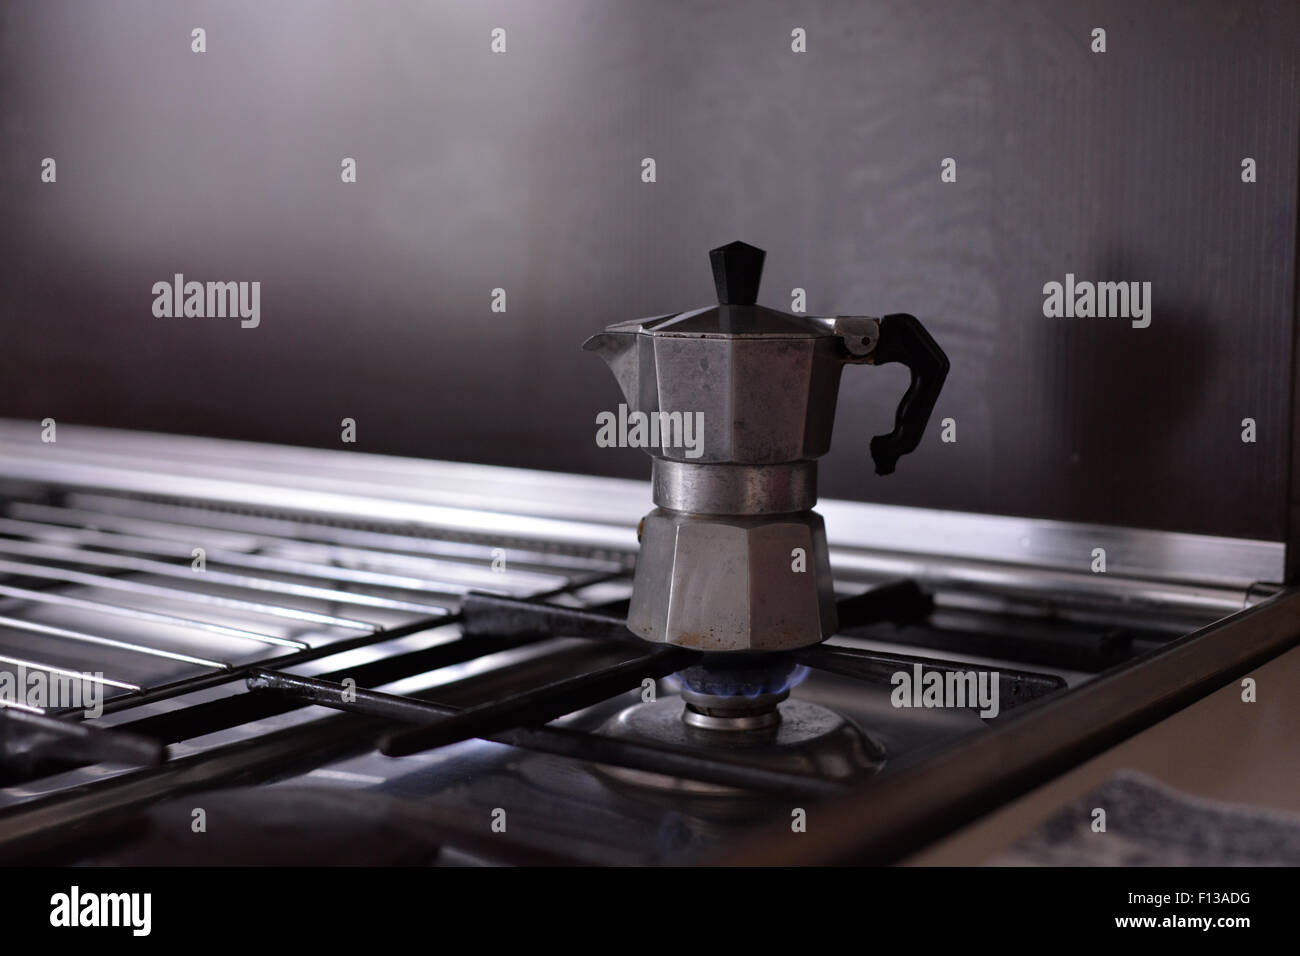 Kaffee auf dem herd kochen -Fotos und -Bildmaterial in hoher Auflösung –  Alamy